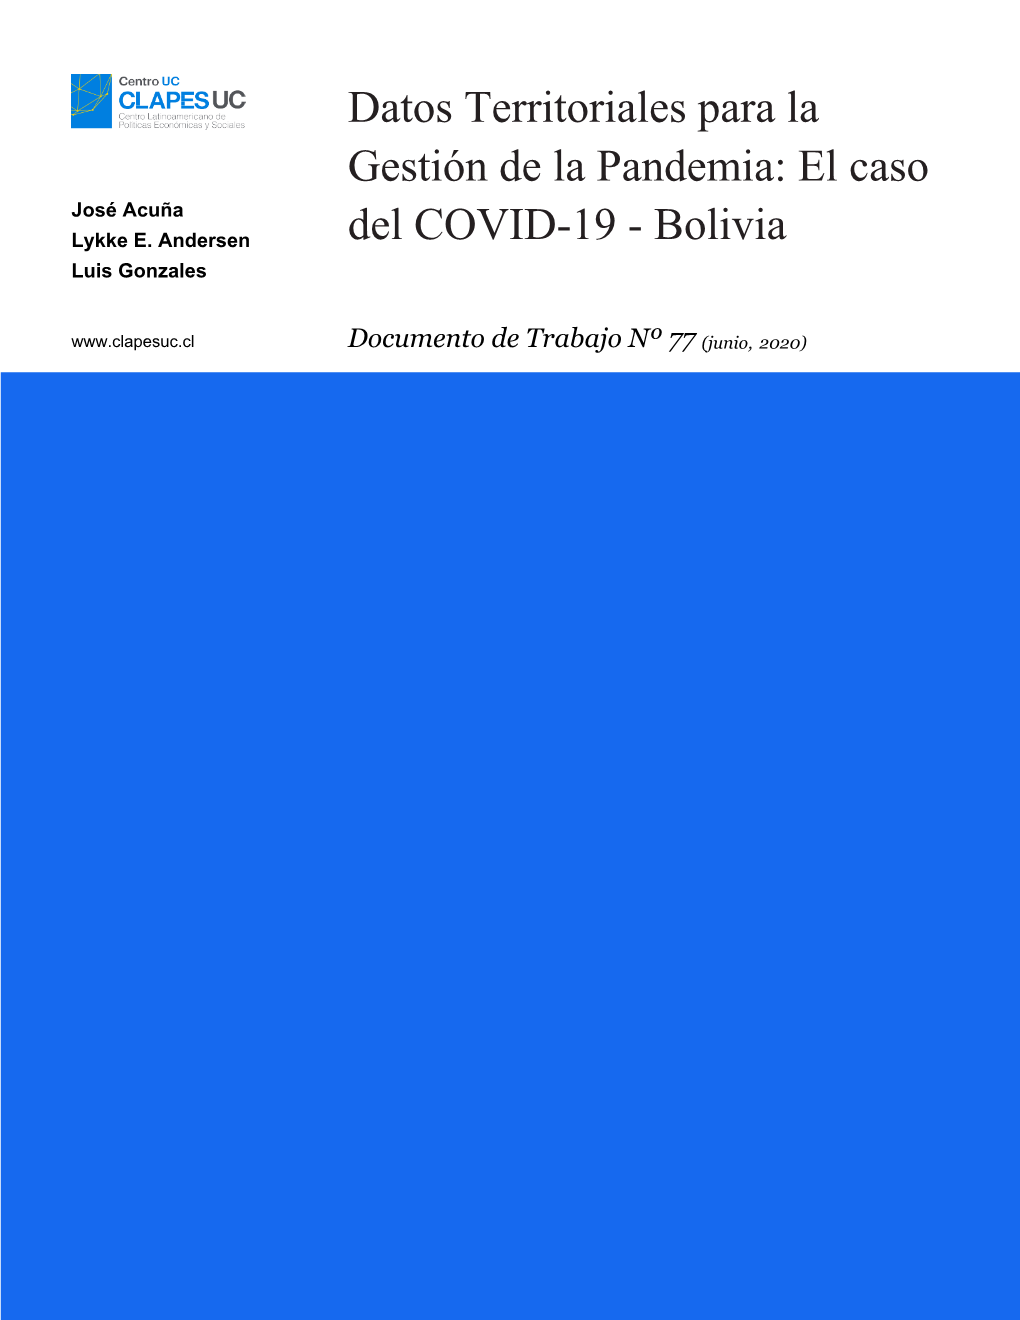 Datos Territoriales Para La Gestión De La Pandemia: El Caso Del COVID-19 - Bolivia